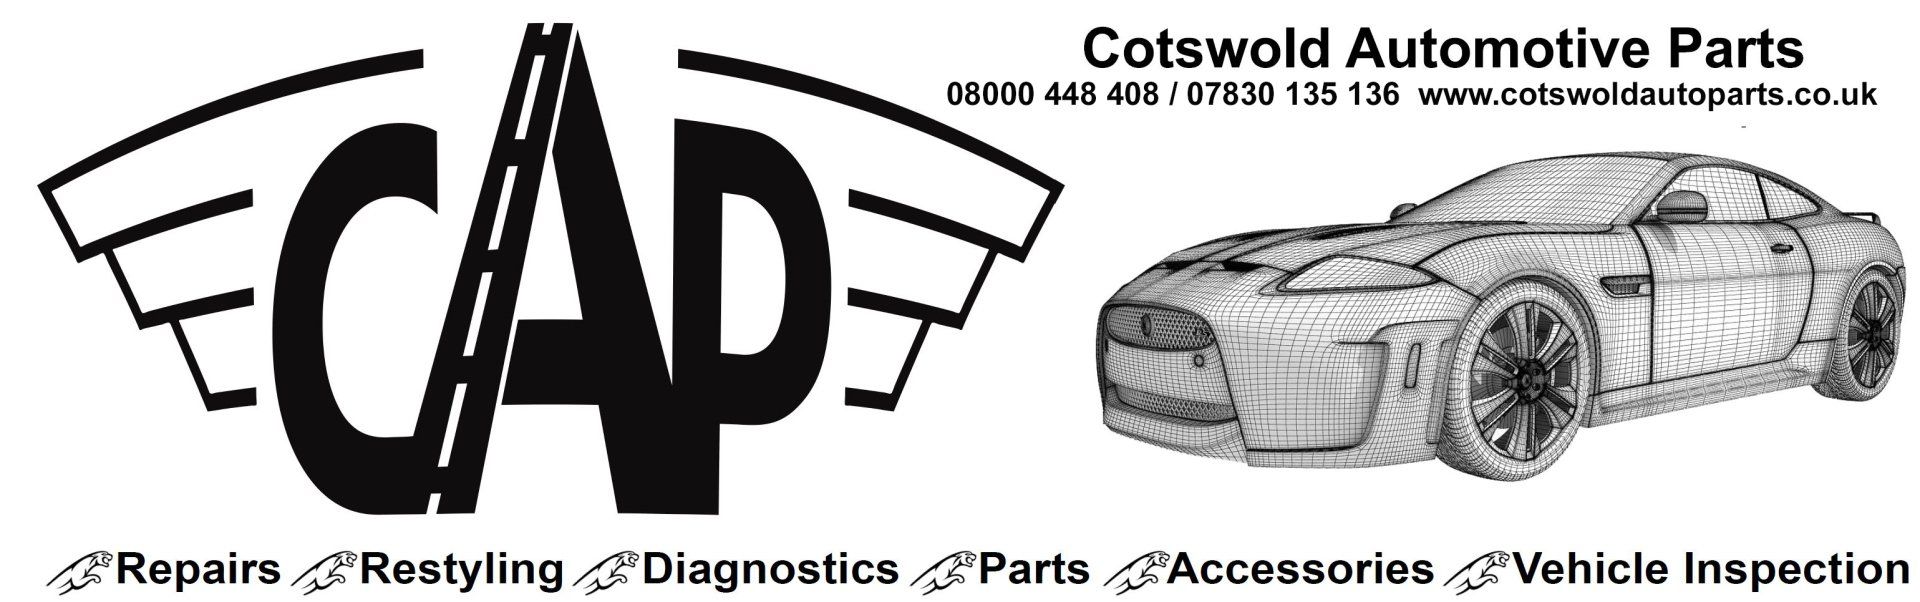 Cotswold Automotive Parts logo